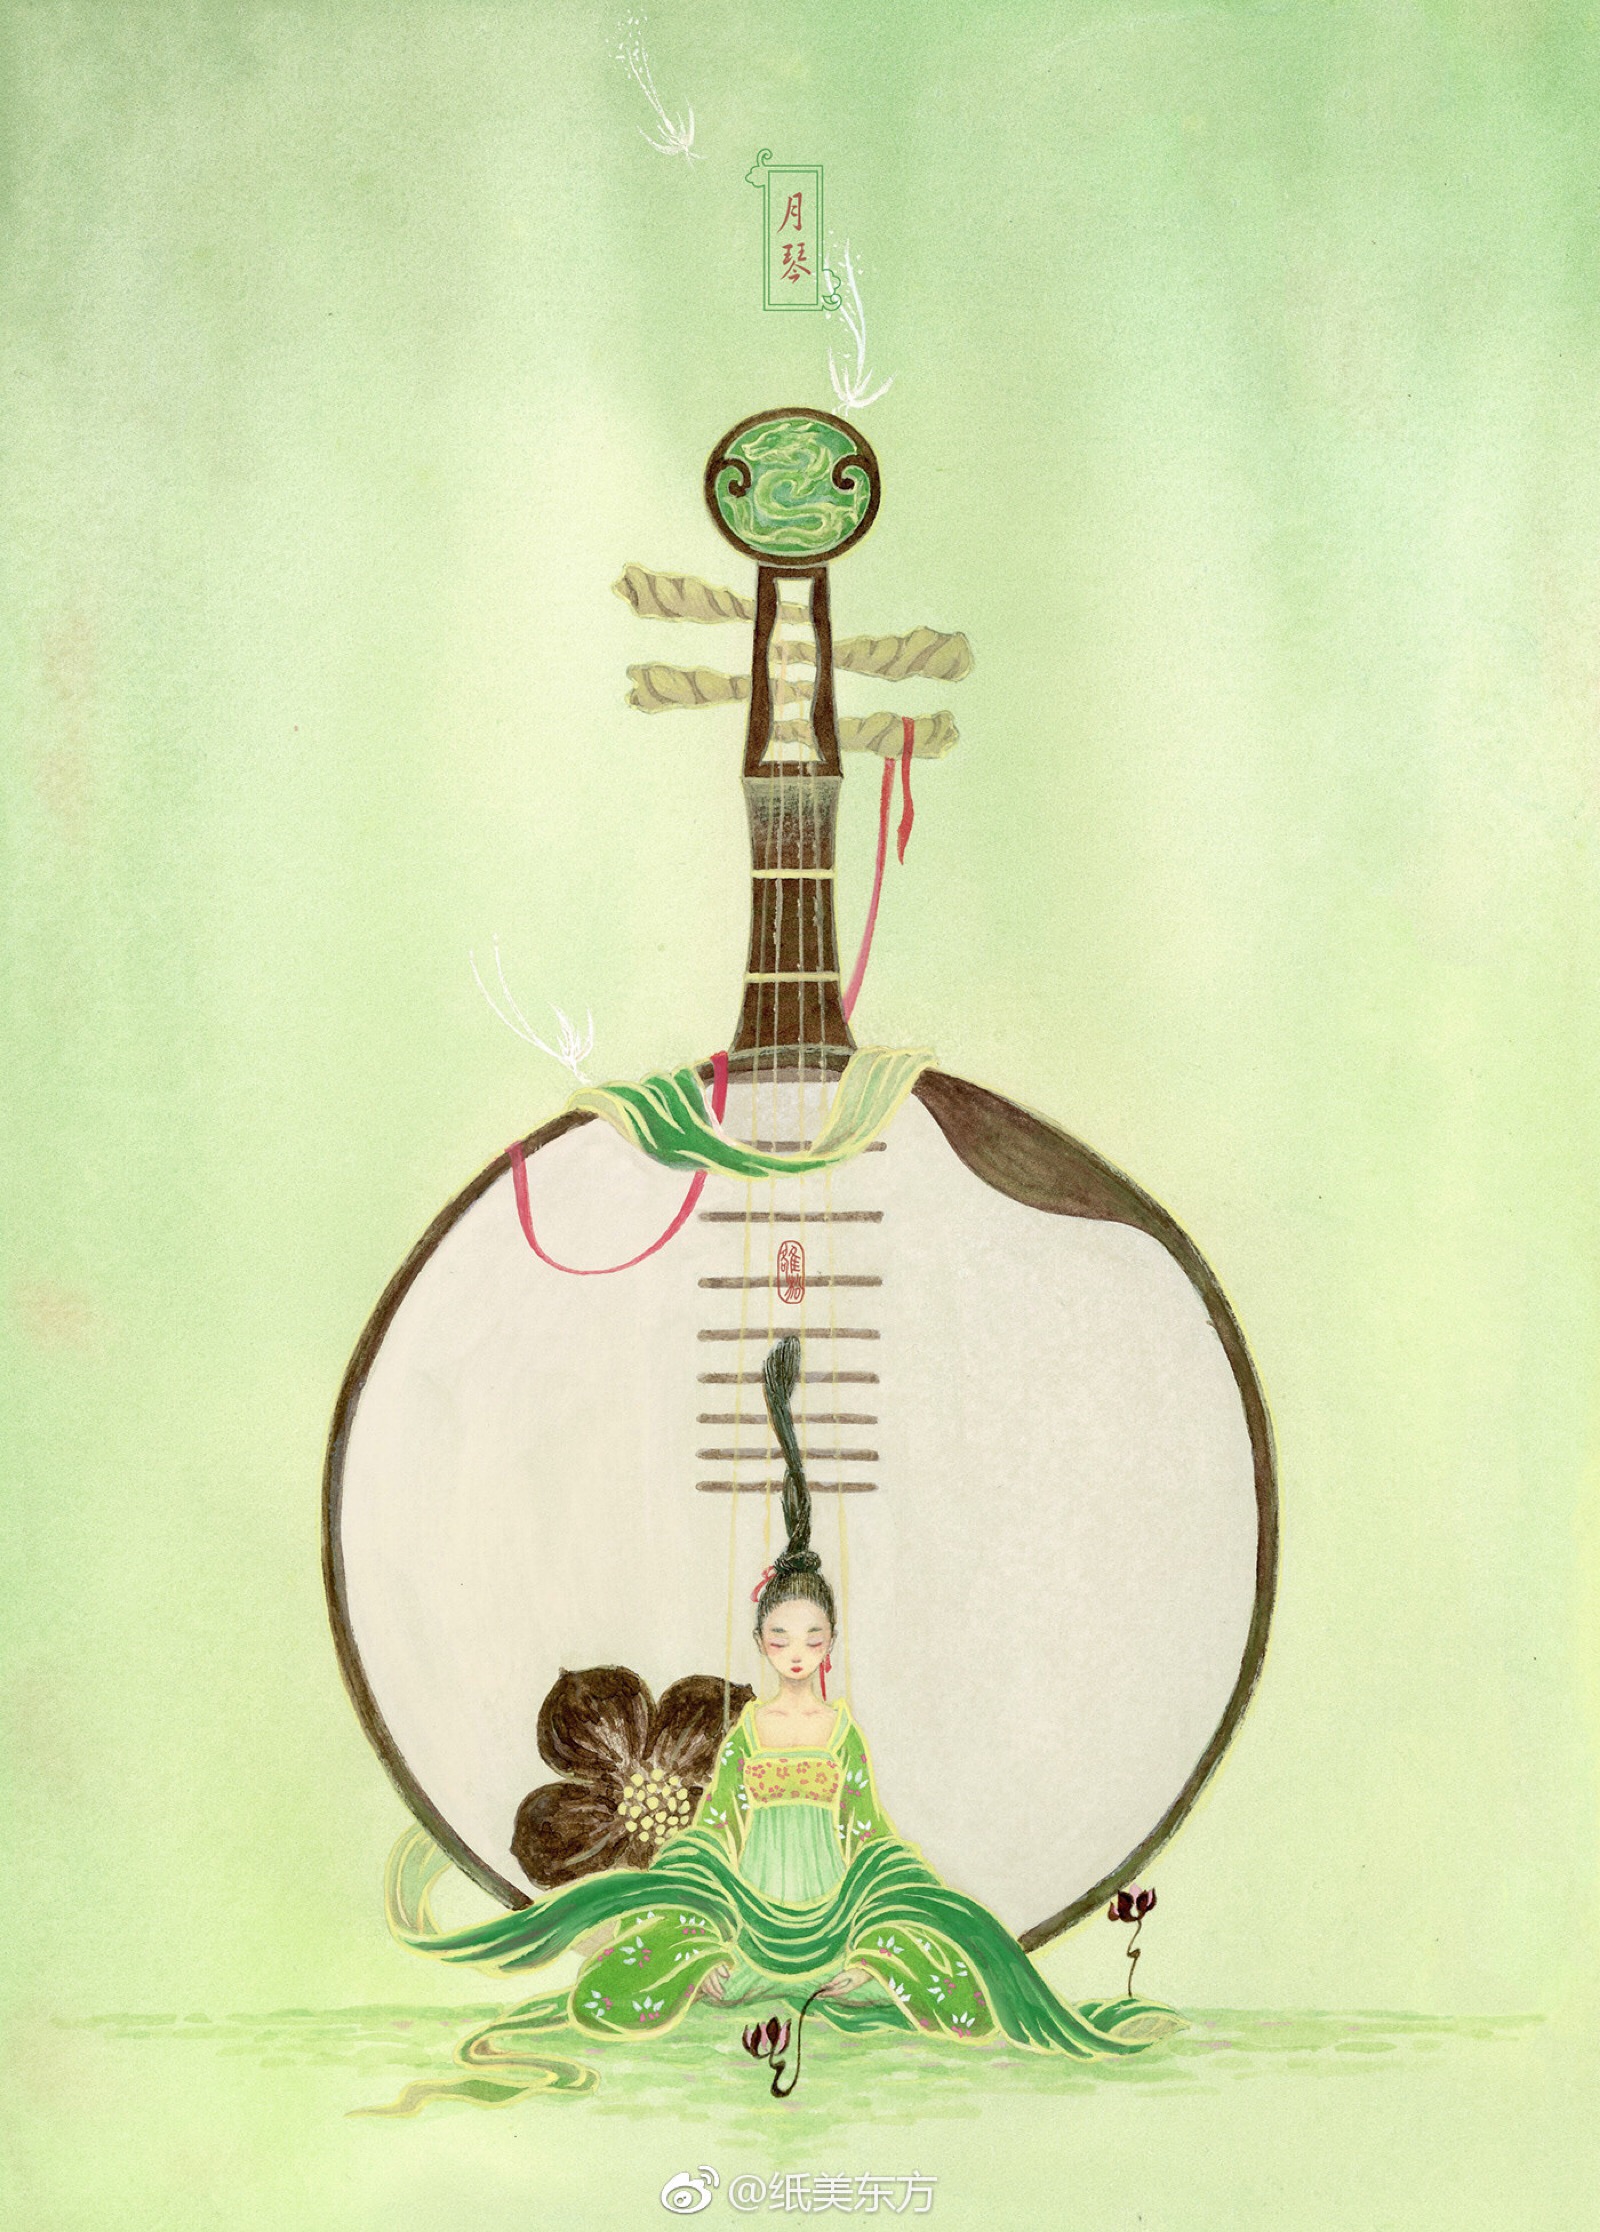 《煌乐三章》中国古典乐器插画师:雒松 luo song